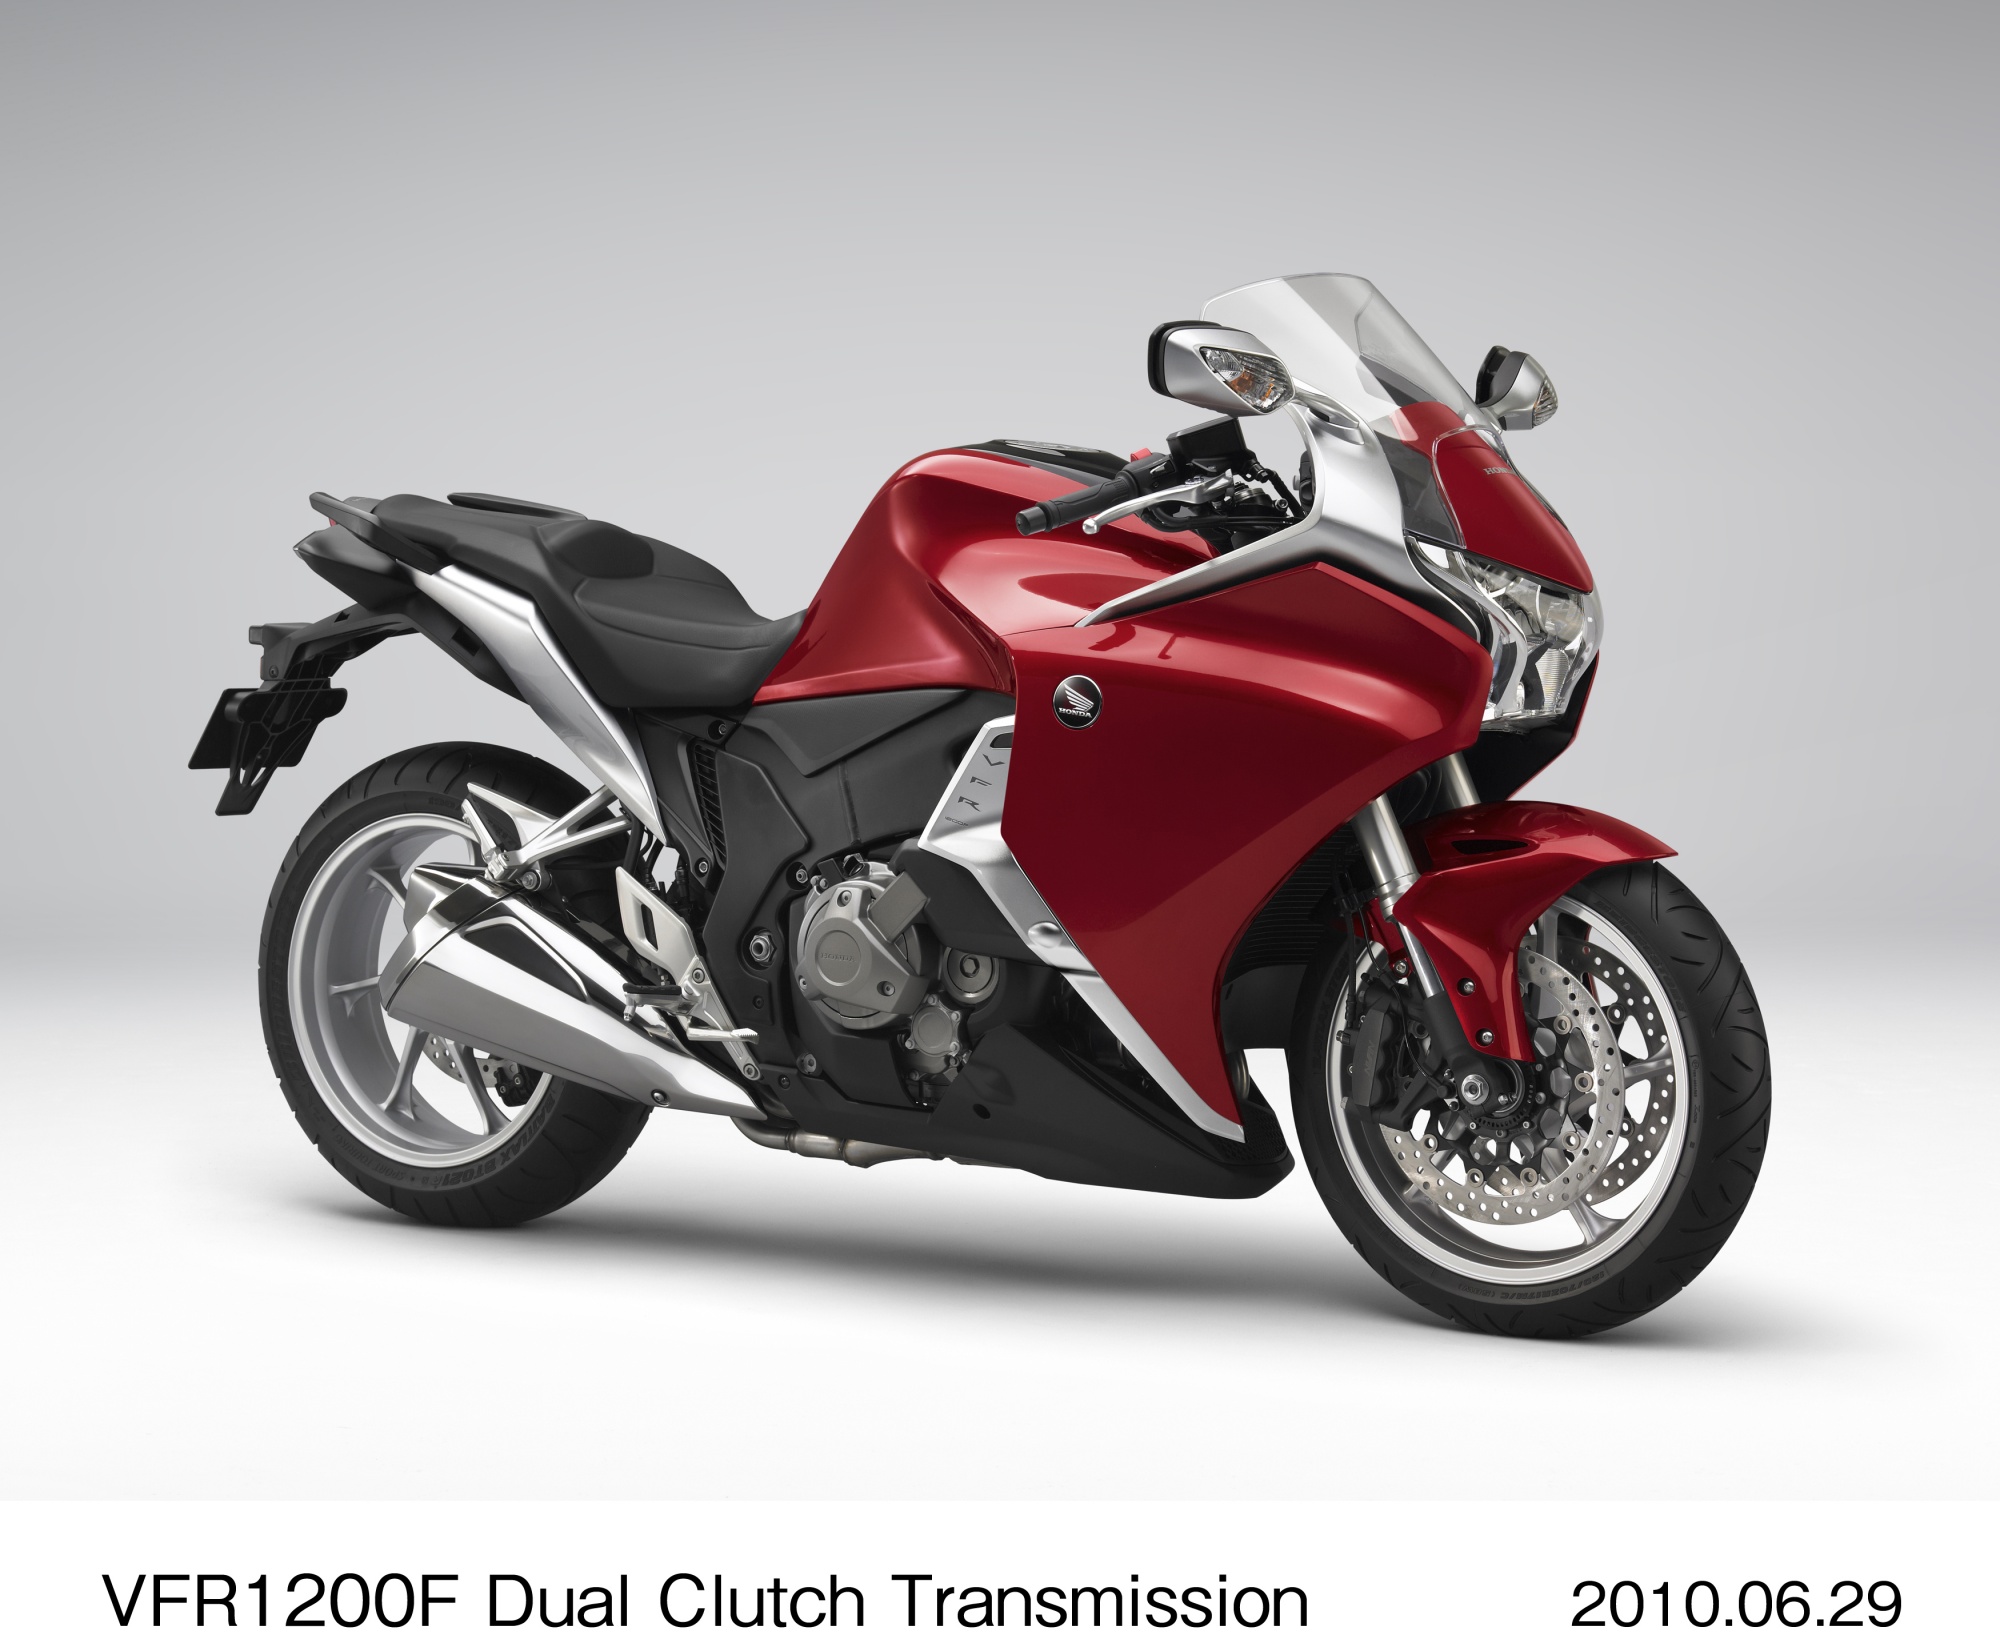 Honda VFR1200F Dual Clutch Transmission